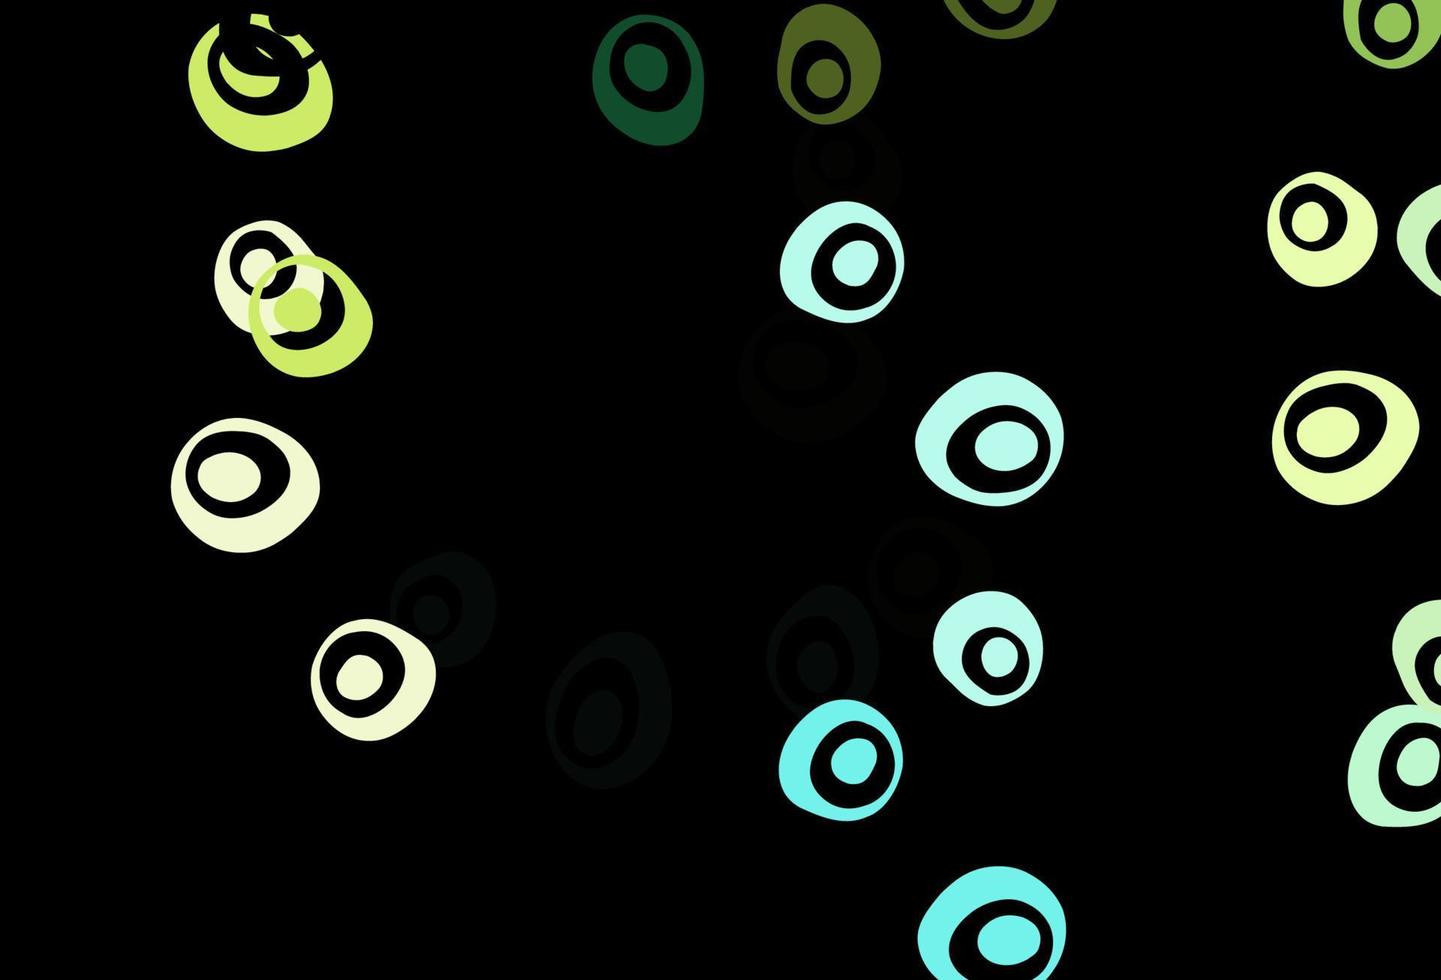 mörkgrön, gul vektormall med cirklar. vektor